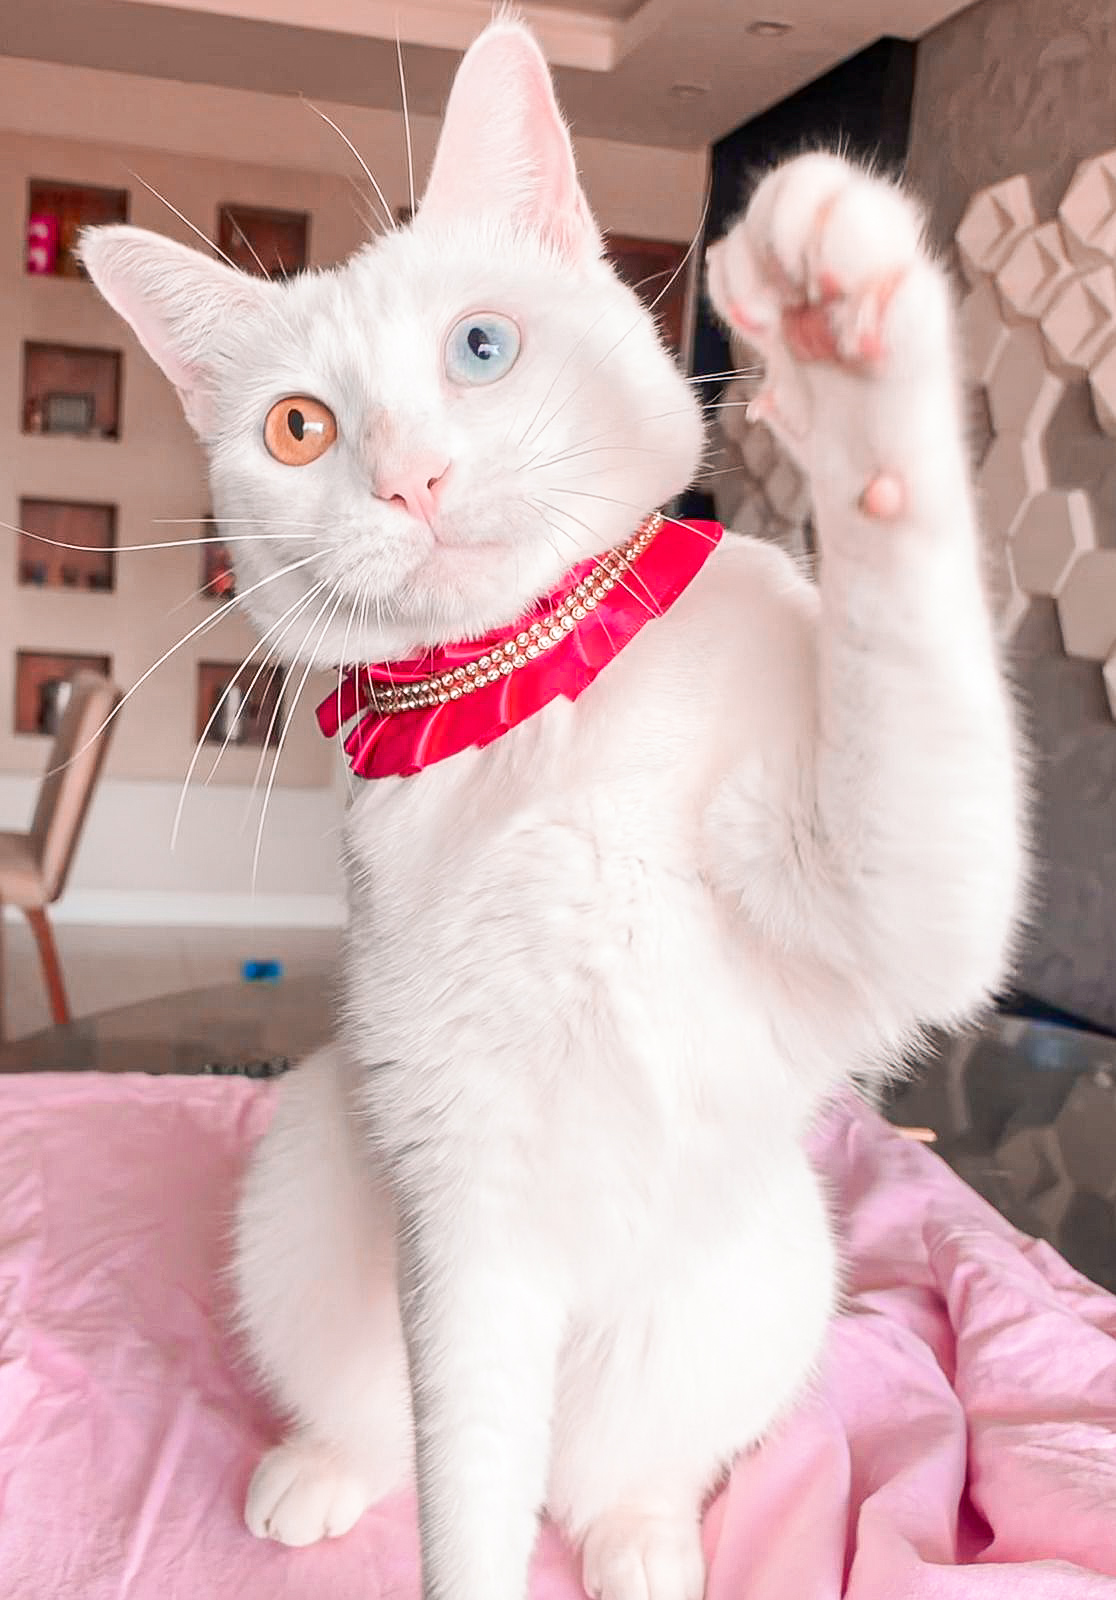 Galeria Pet alerta sobre câncer de mama em gatos